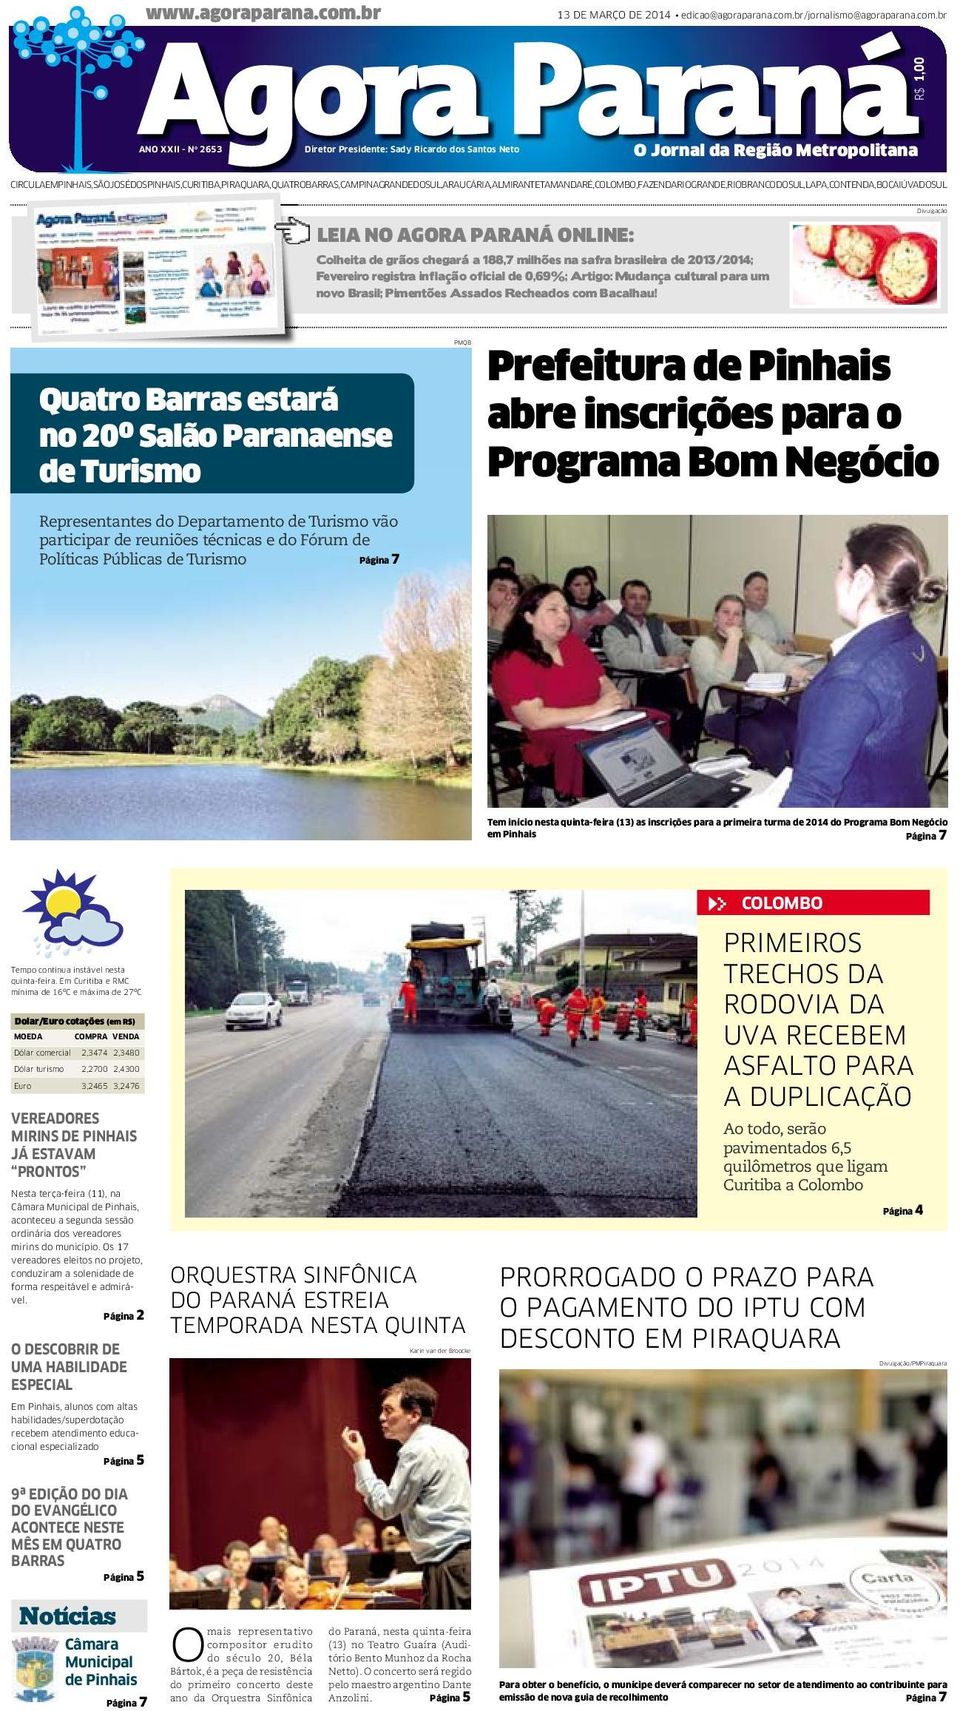 br/jornalismo@agoraparana.com.